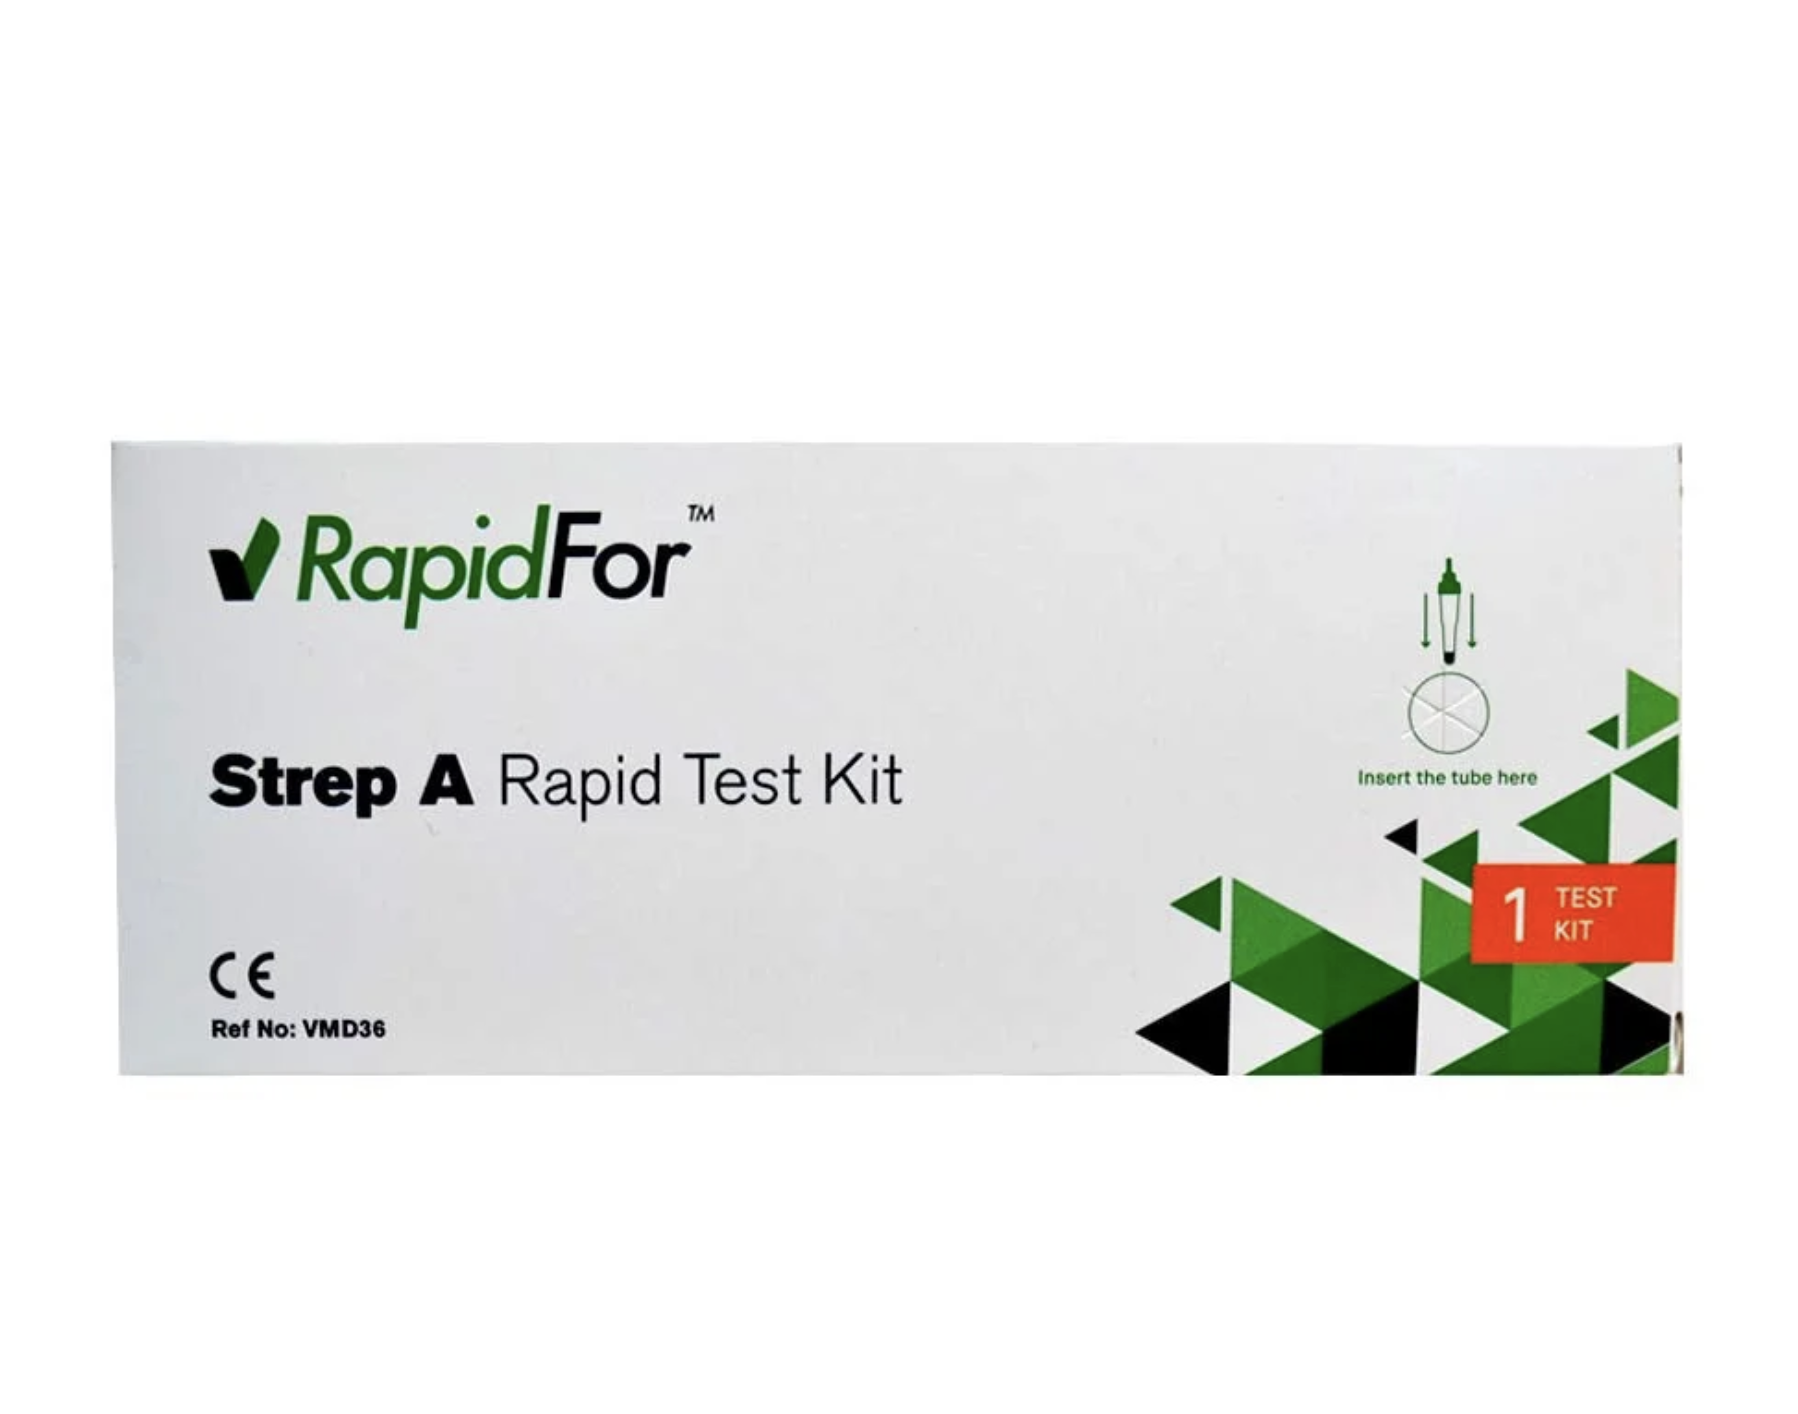 RapidFor Strep A Бърз тест за стрептококи - скарлатина група A